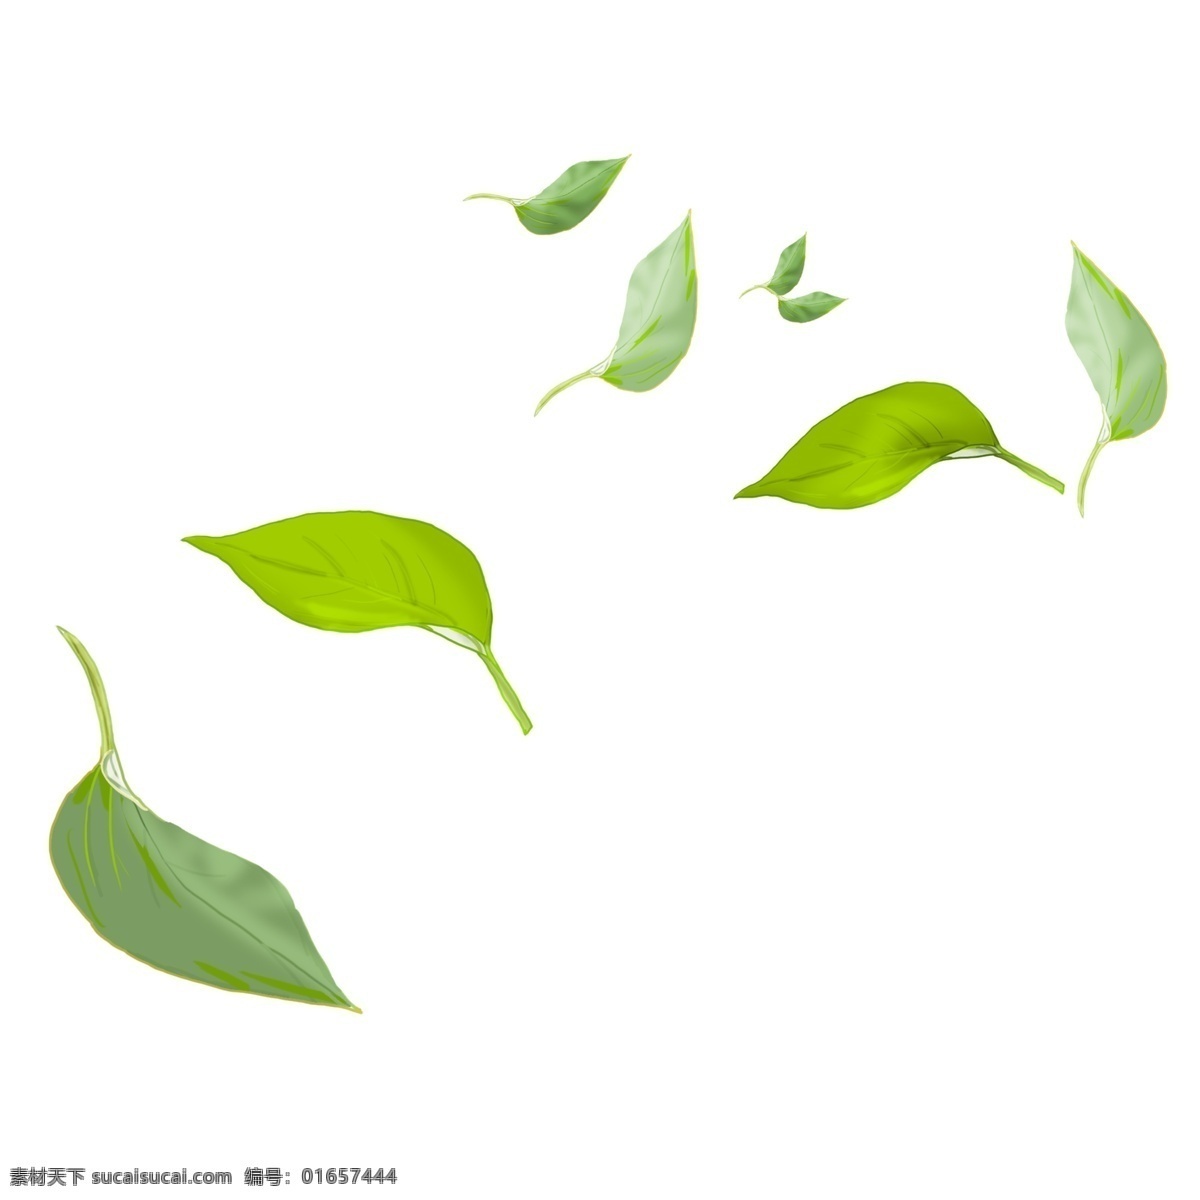 唯美 卡通 绿色 树叶 插画 绿叶插画 卡通植物插画 创意植物 落叶 绿色的叶子 植物插画 漂浮的落叶